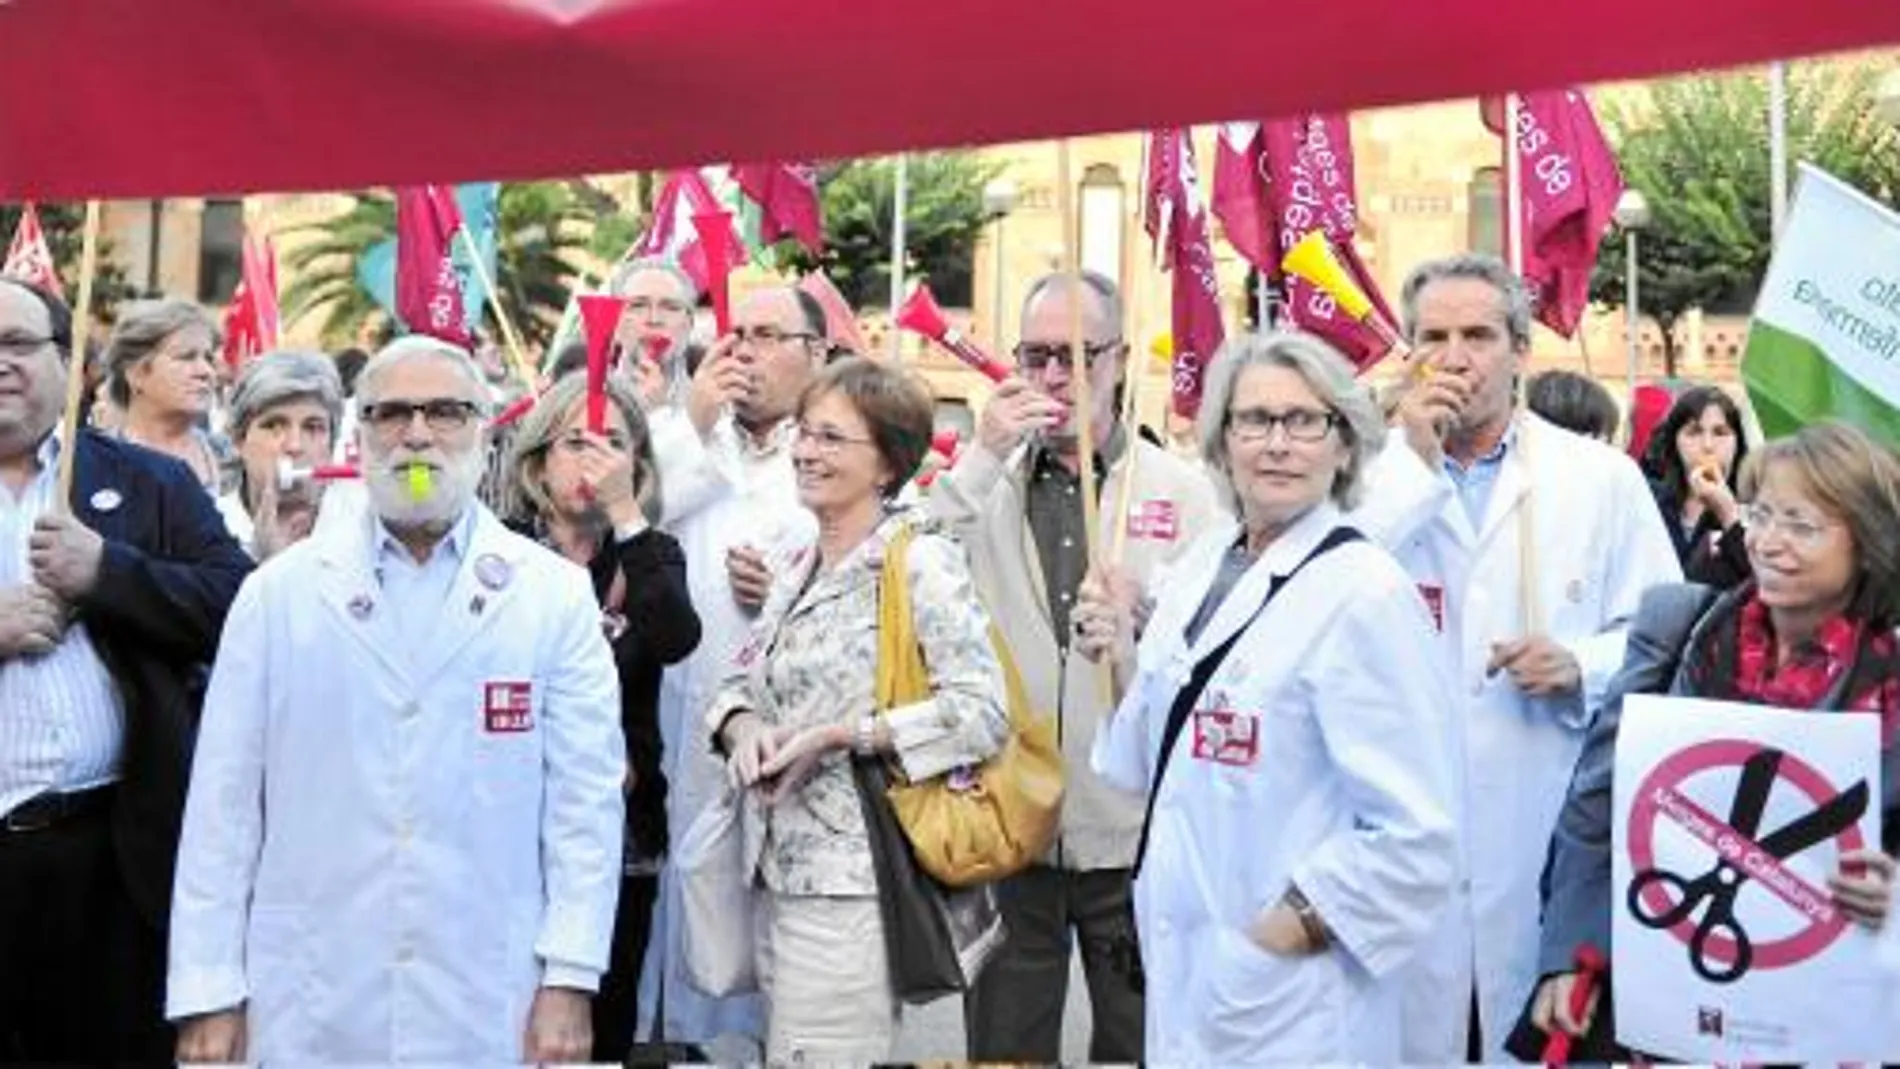 Todos los sindicatos estuvieron presentes en la protesta frente a la conselleria de Salud